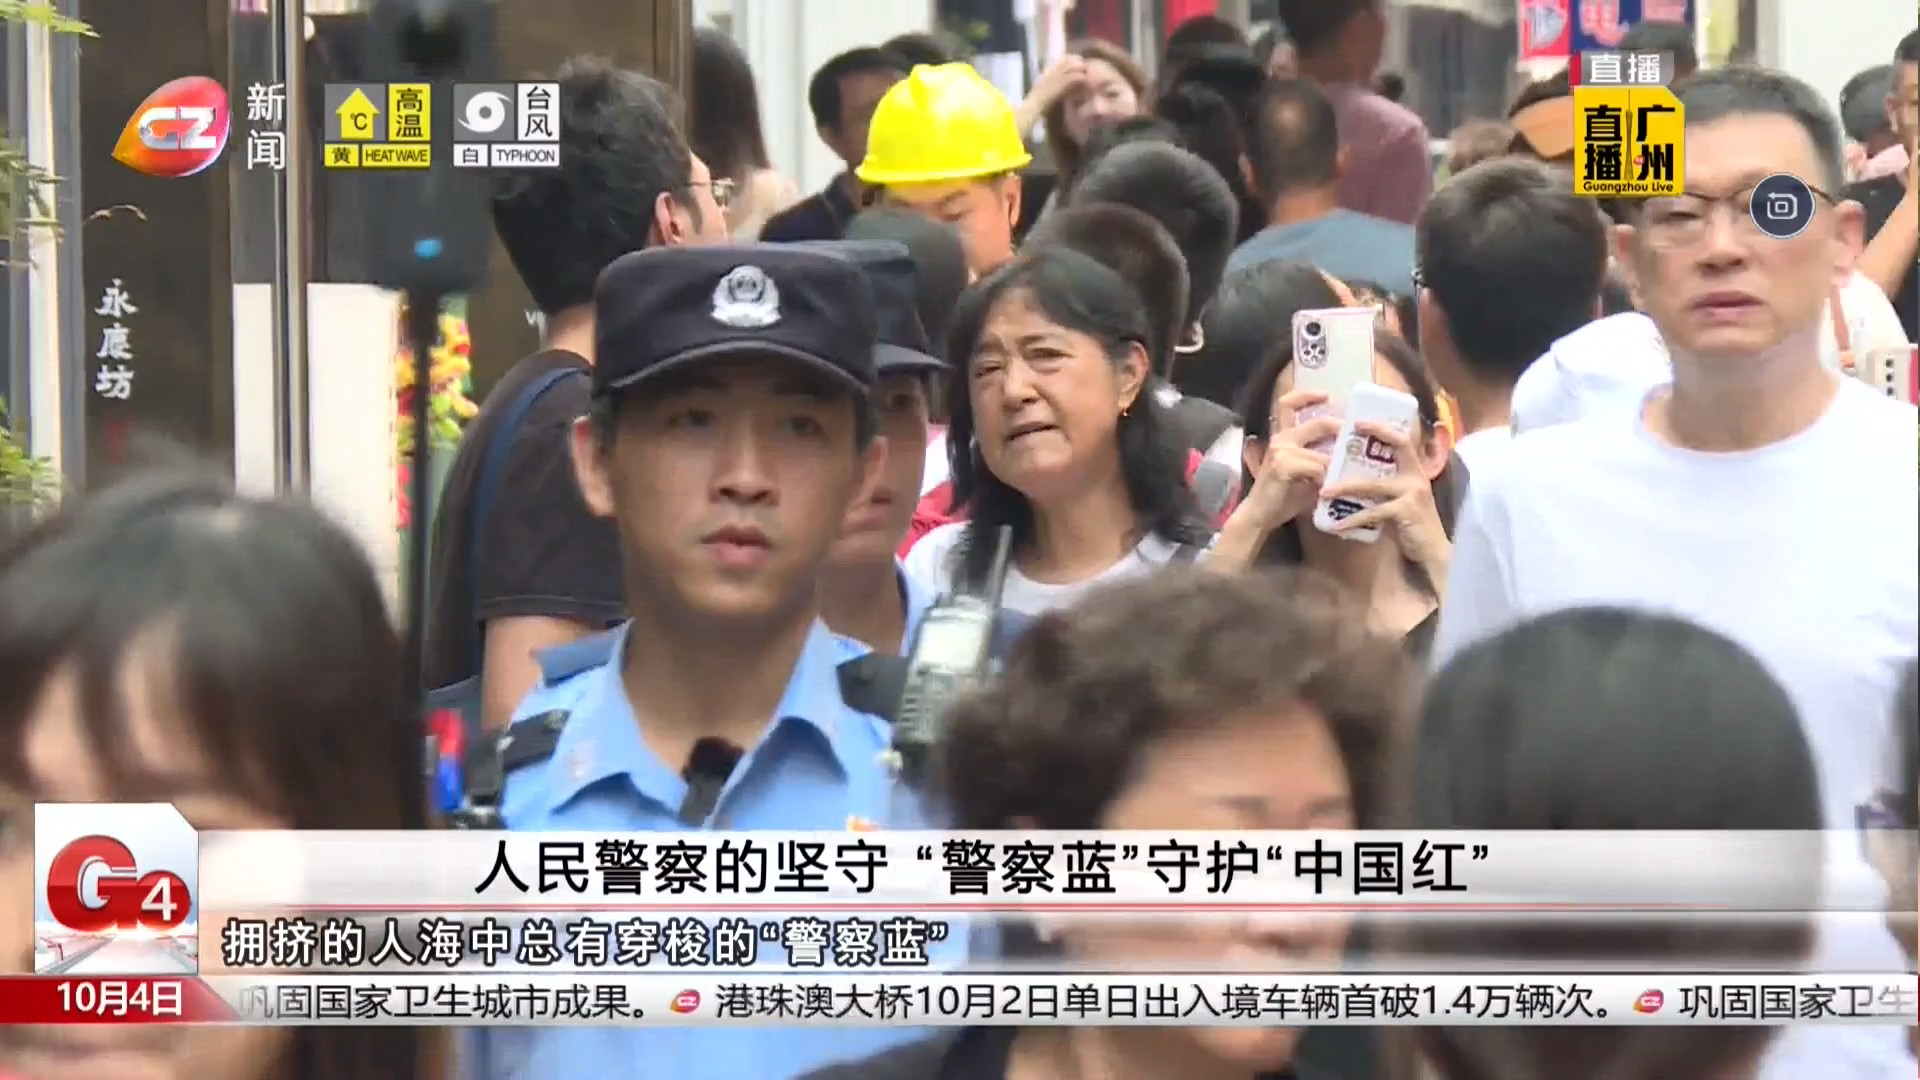 广州台新闻频道 G4出动 人民警察的坚守“警察蓝”守护“中国红”